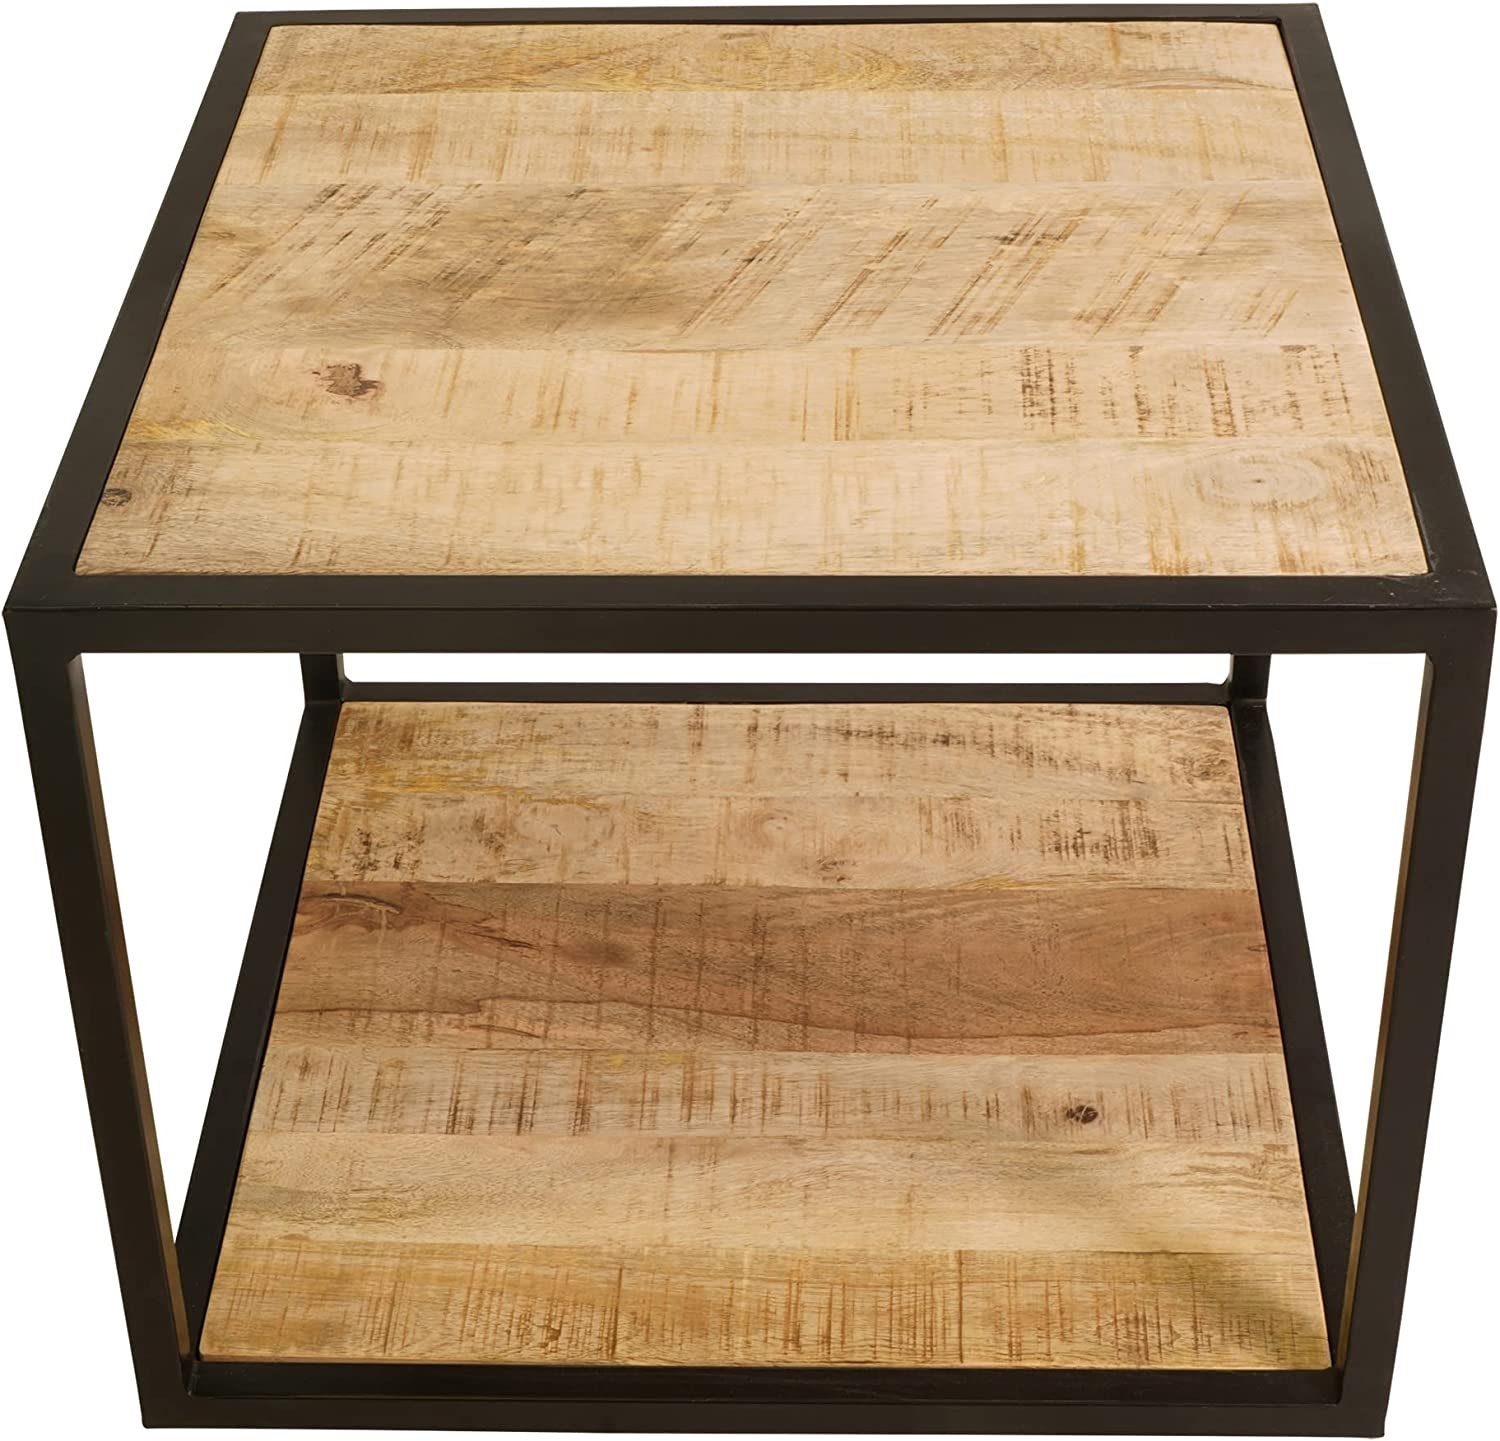 Lesli Living Beistelltisch Beistelltisch 50x50x40cm Mangoholz Owen Tisch Holz